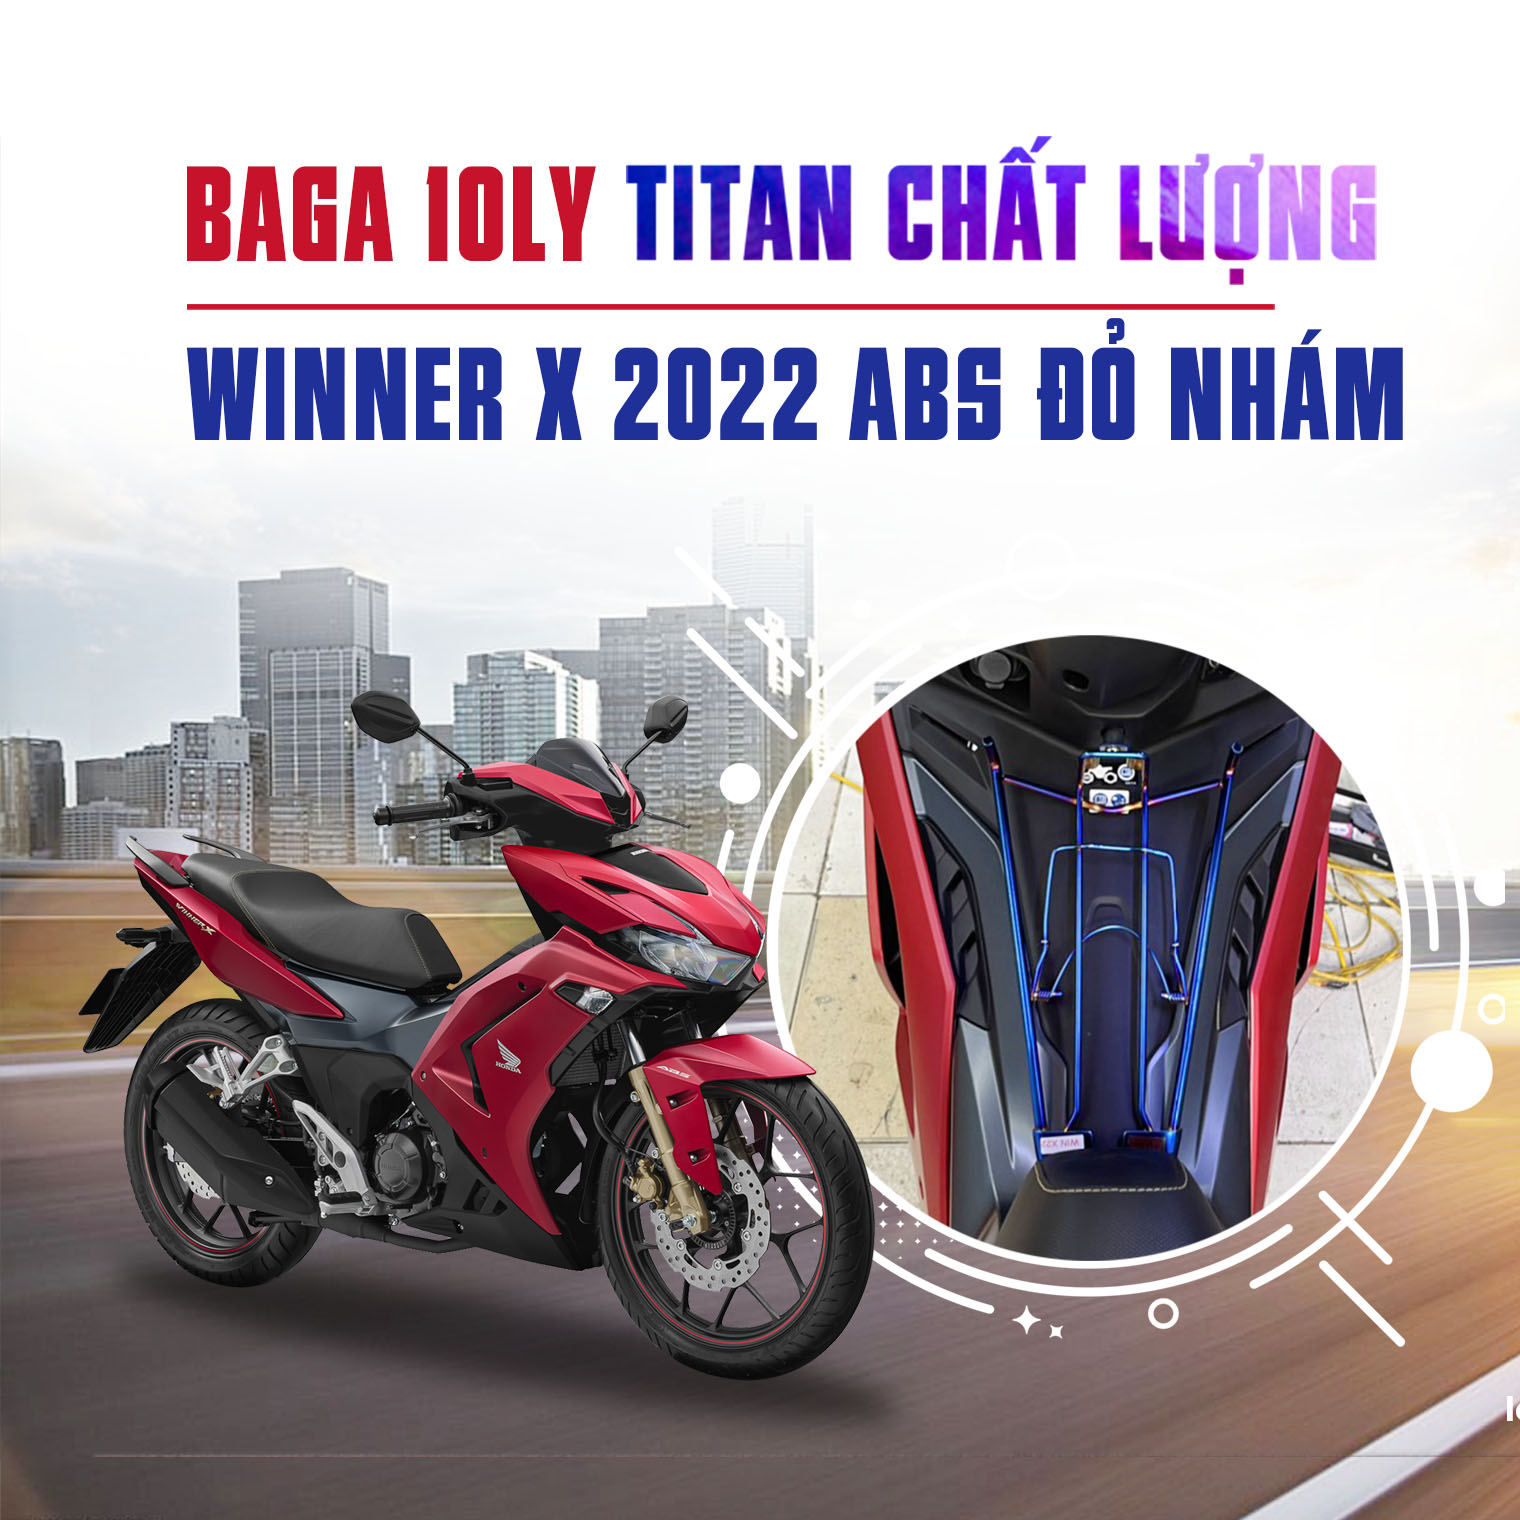 baga titan 10ly cho xe máy Winner X 2022 ABS đỏ nhám